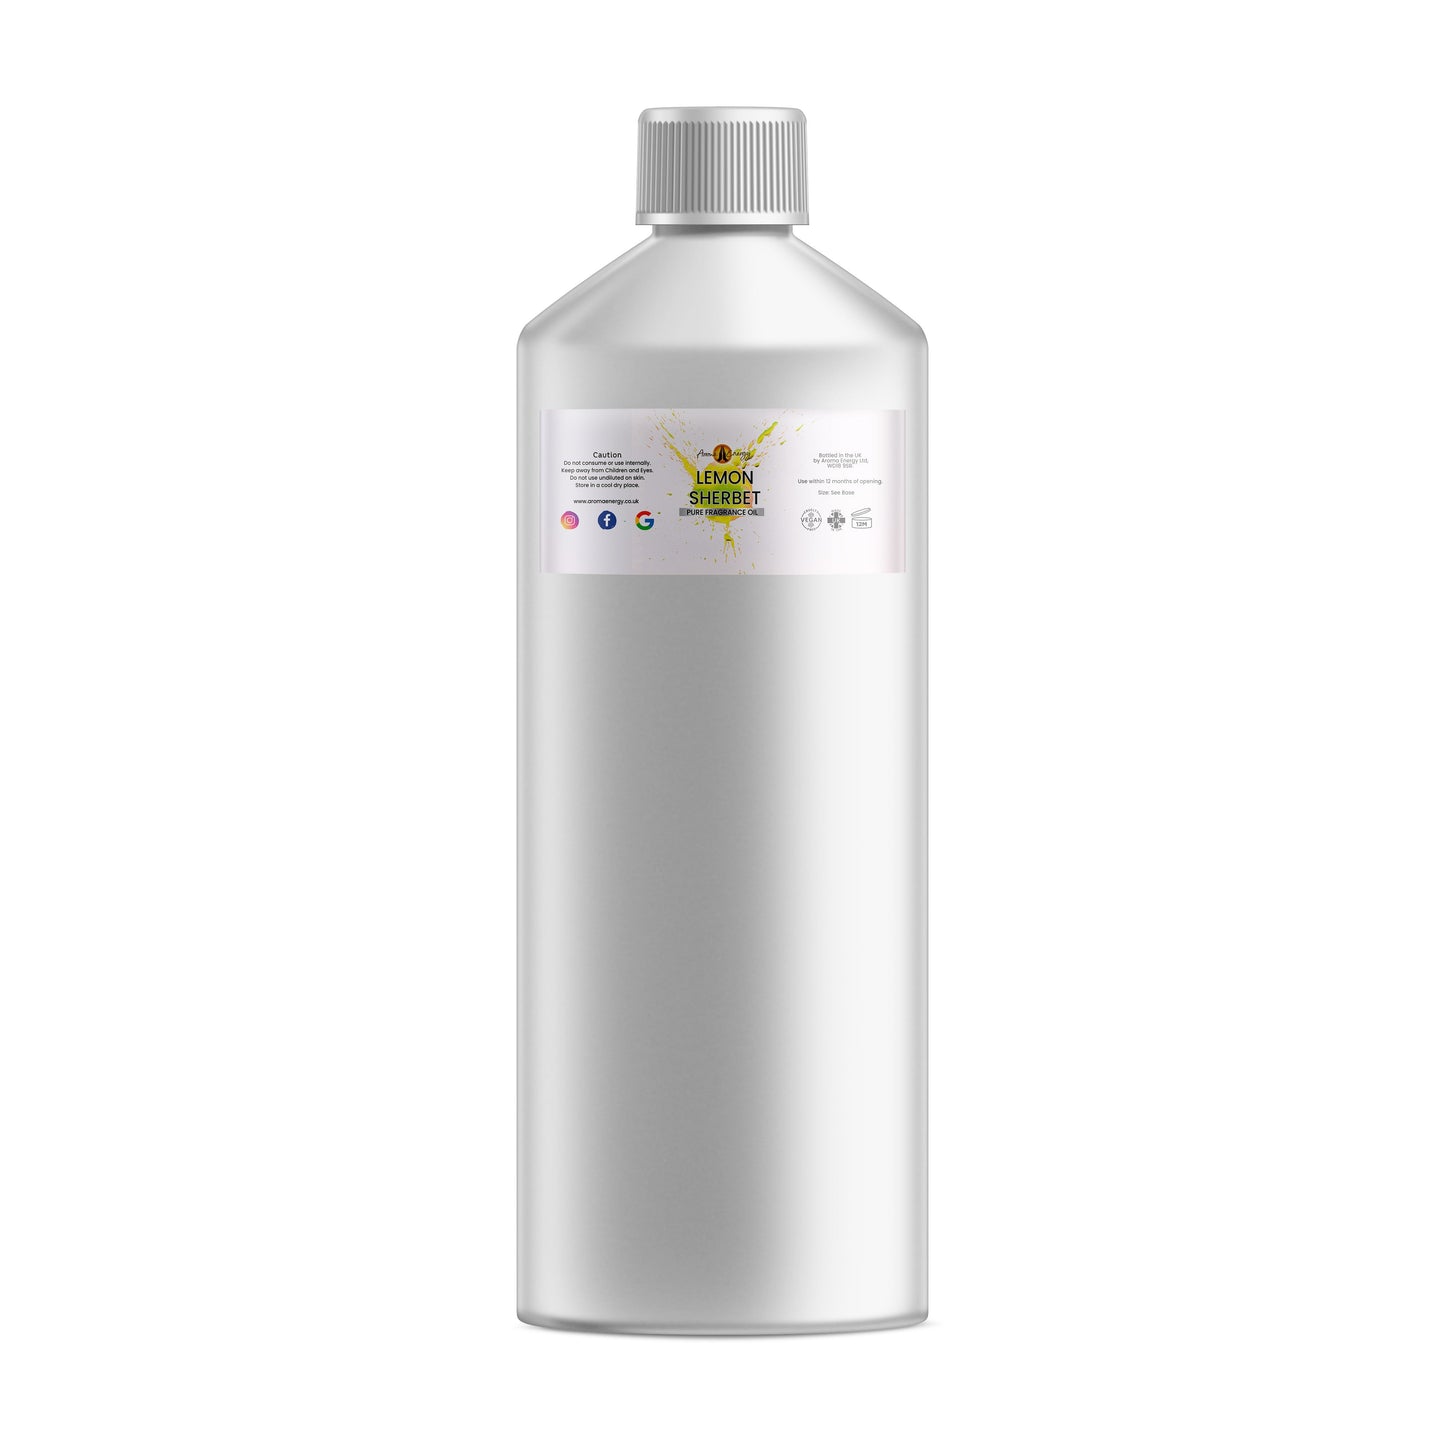 Lemon Sherbet Fragrance Oil - Wholesale - Aroma Energy